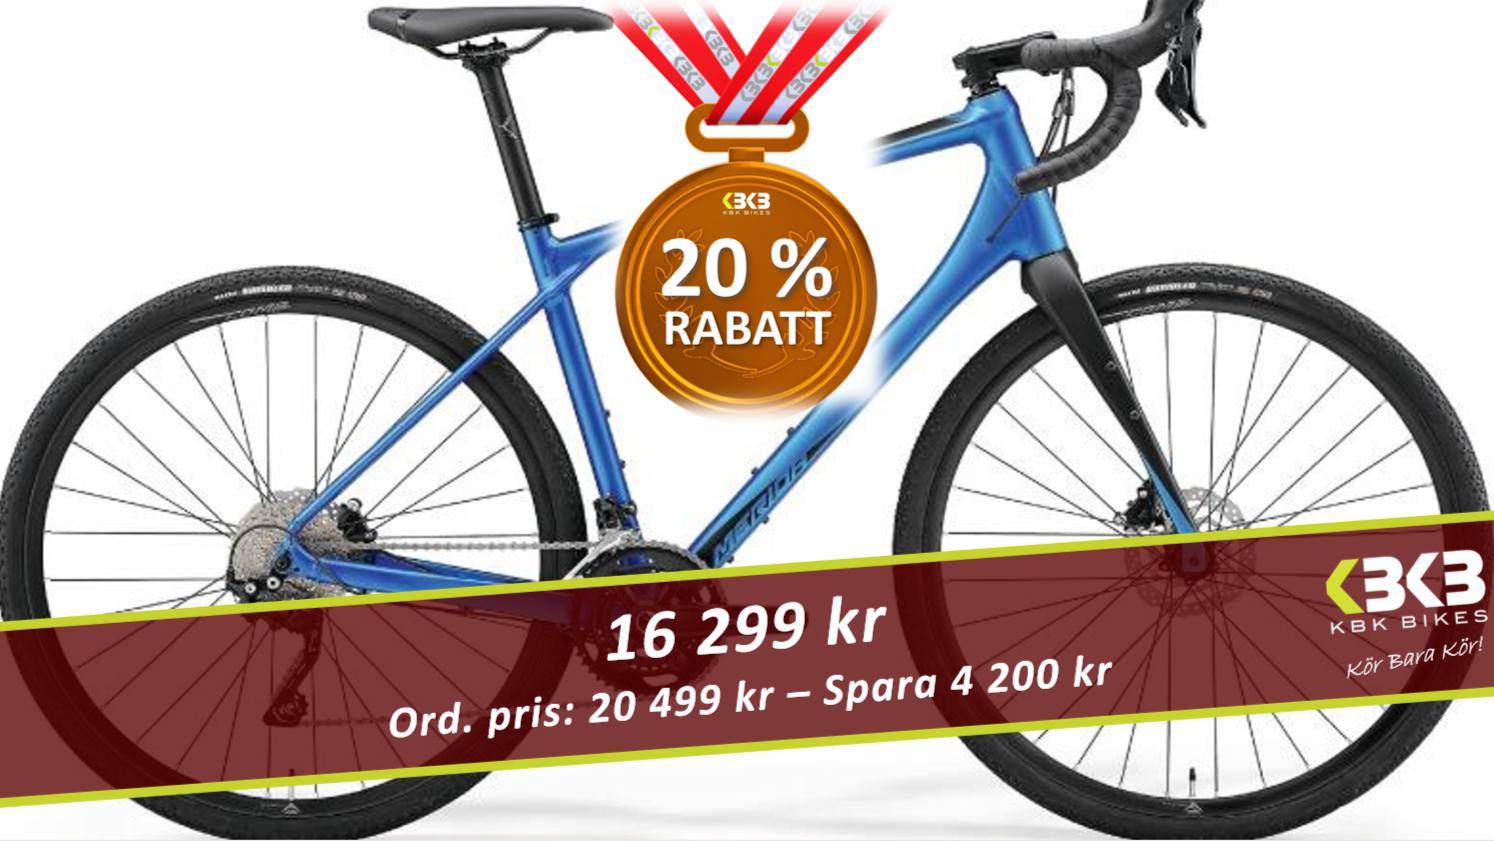 Merida Silex 400 - Mycket cykel för pengarna!